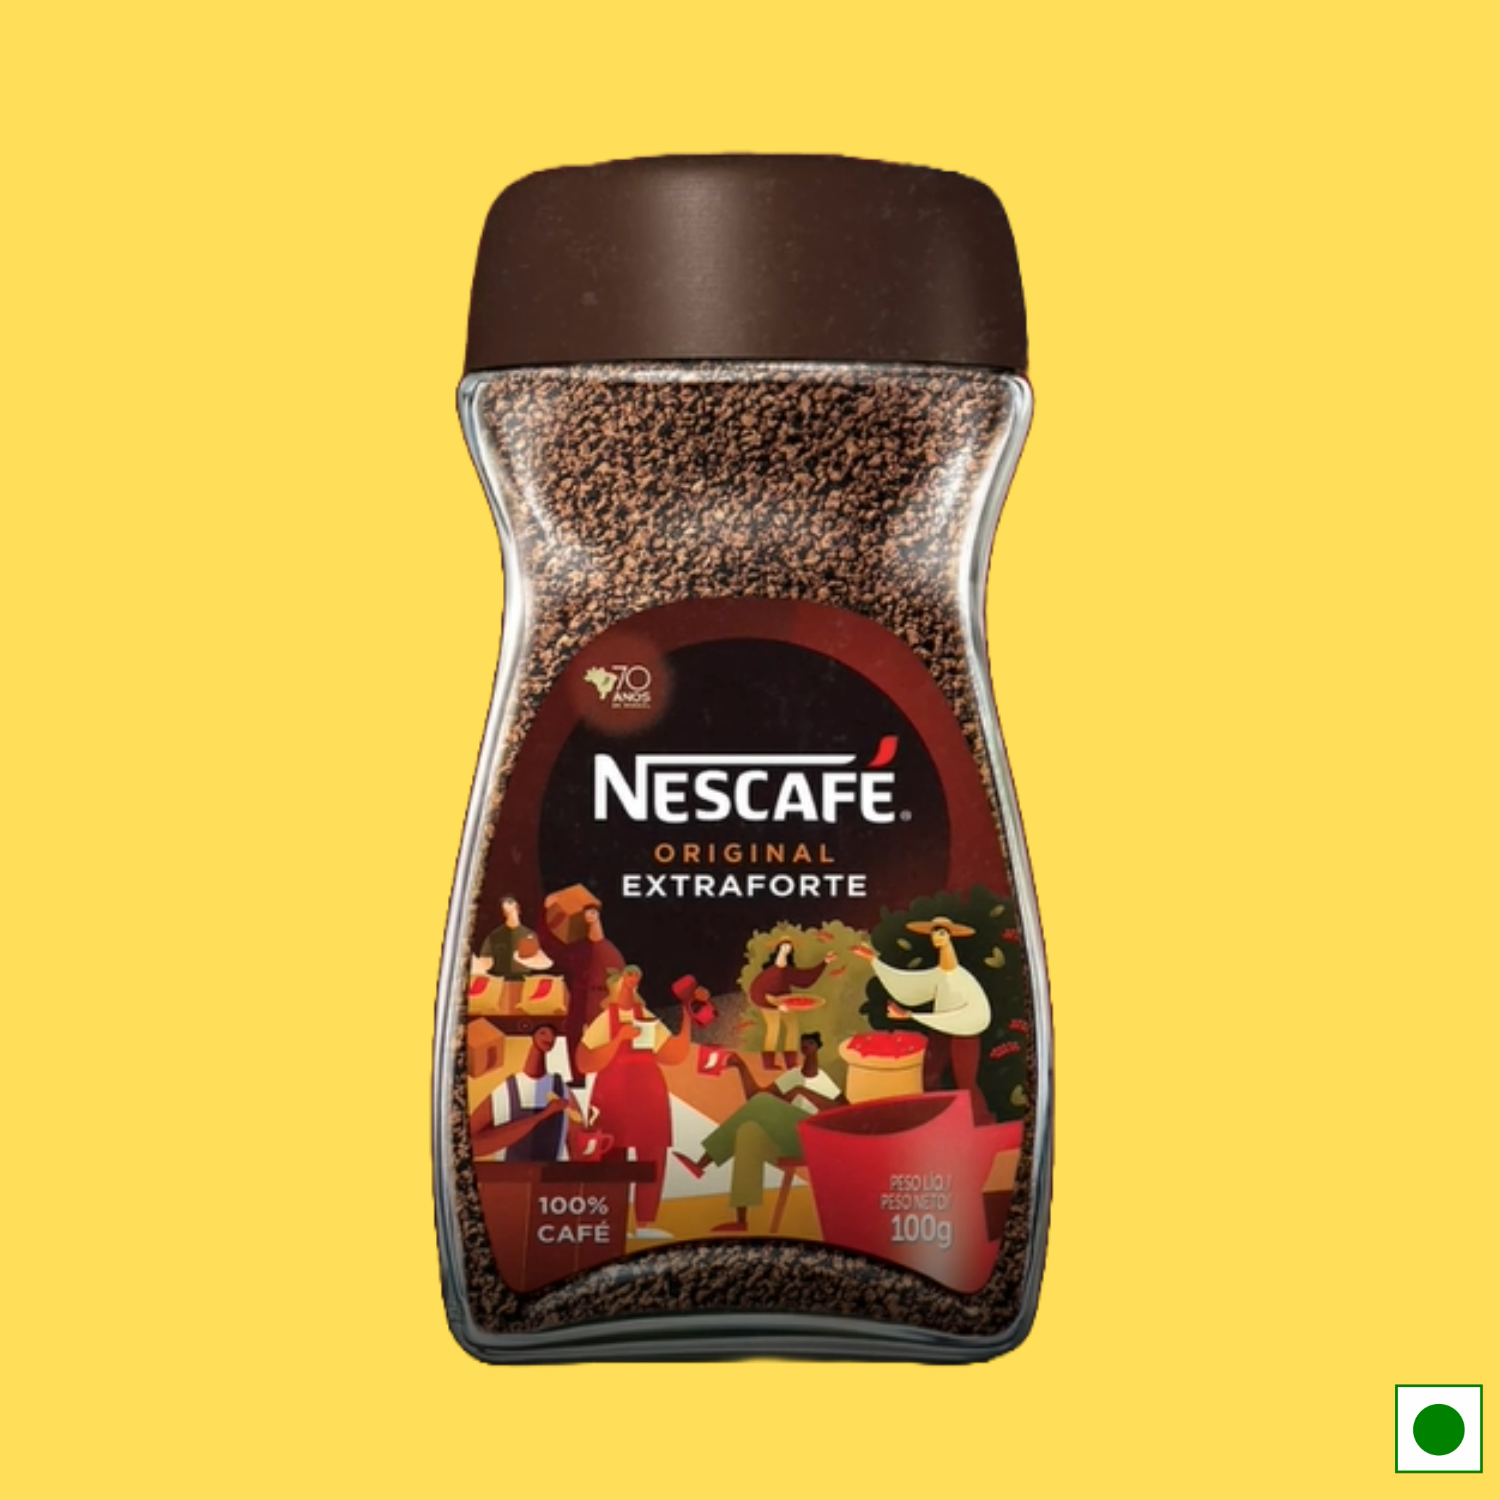 Nescafe Original Extraforte Coffee, 100g (Imported)